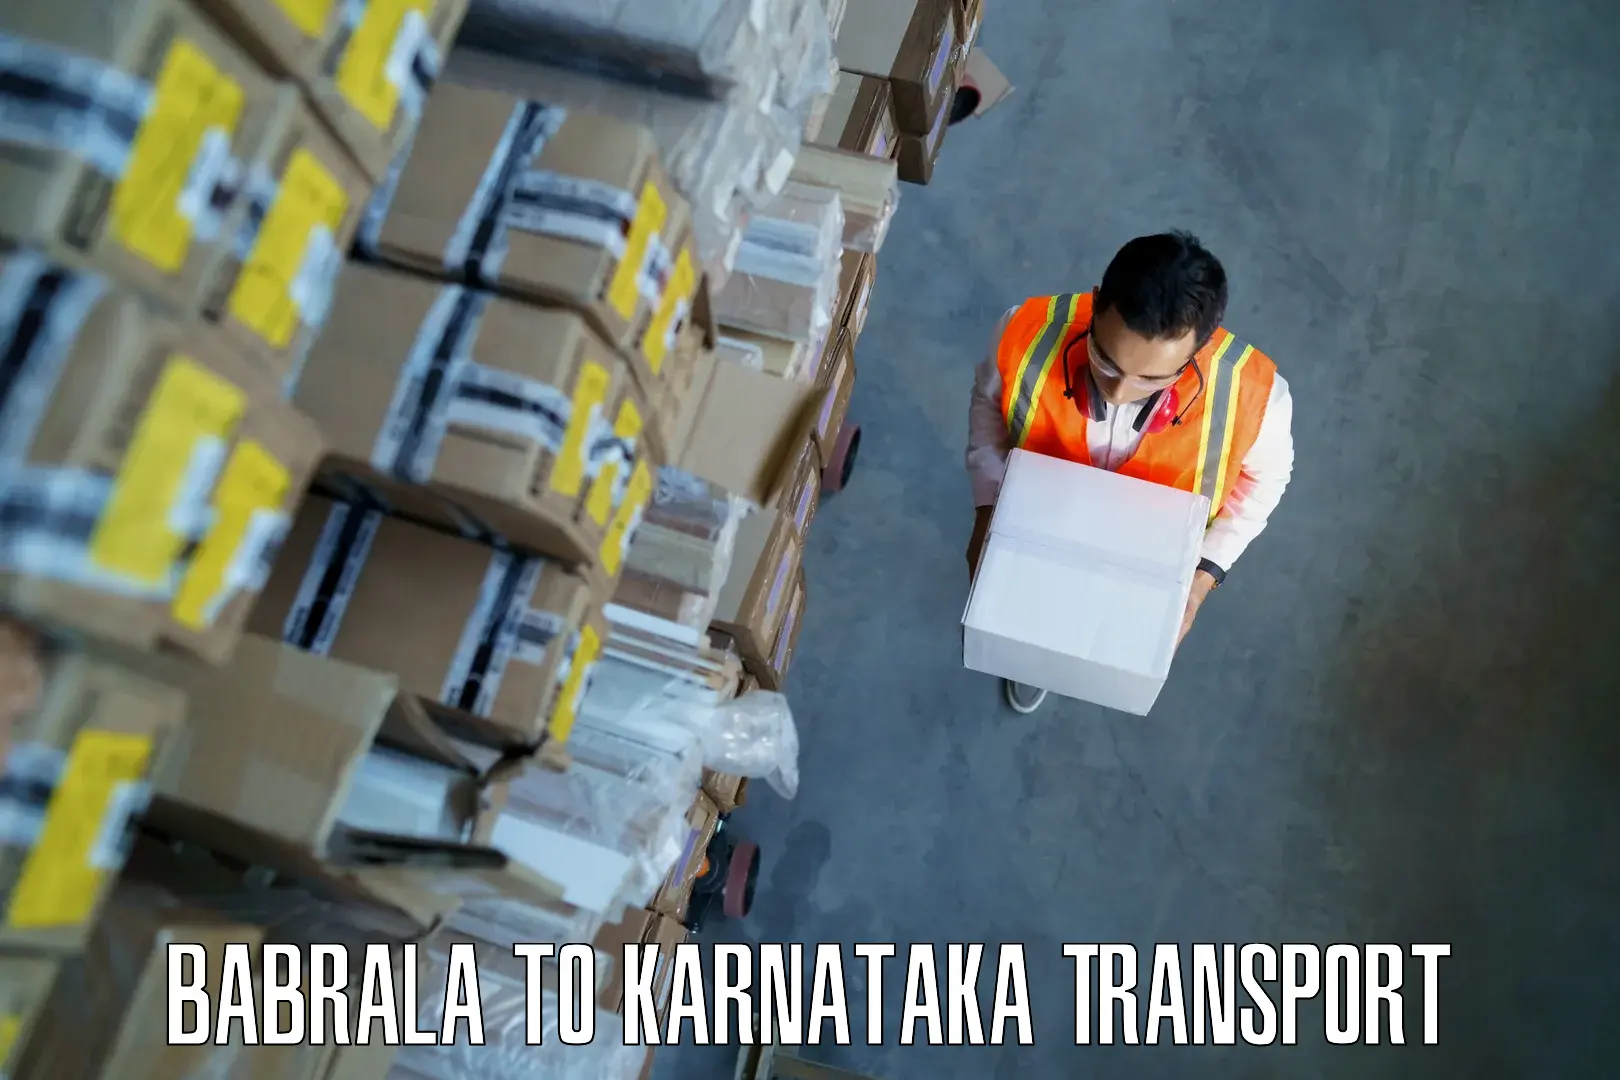 Air freight transport services Babrala to Karnataka